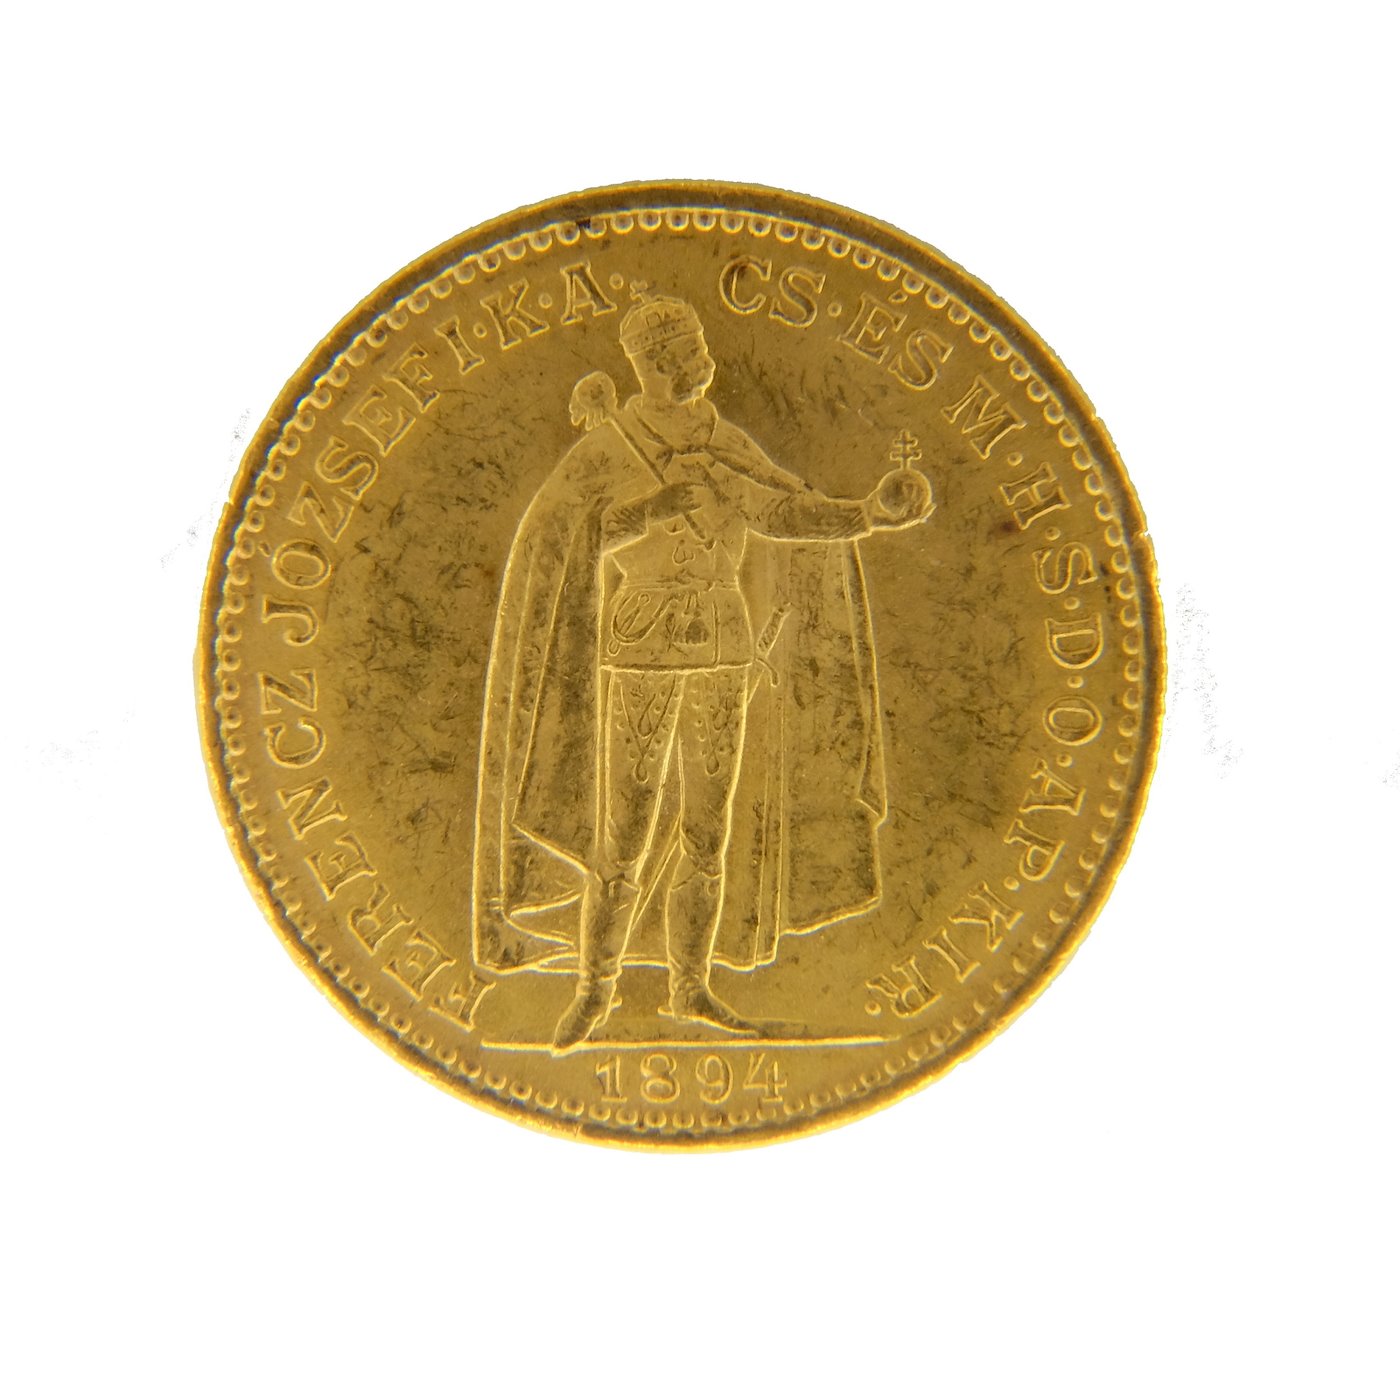 .. - Rakousko Uhersko zlatá 20 Koruna 1894 K.B. uherská, zlato 900/1000, hrubá hmotnost mince 6,78g.